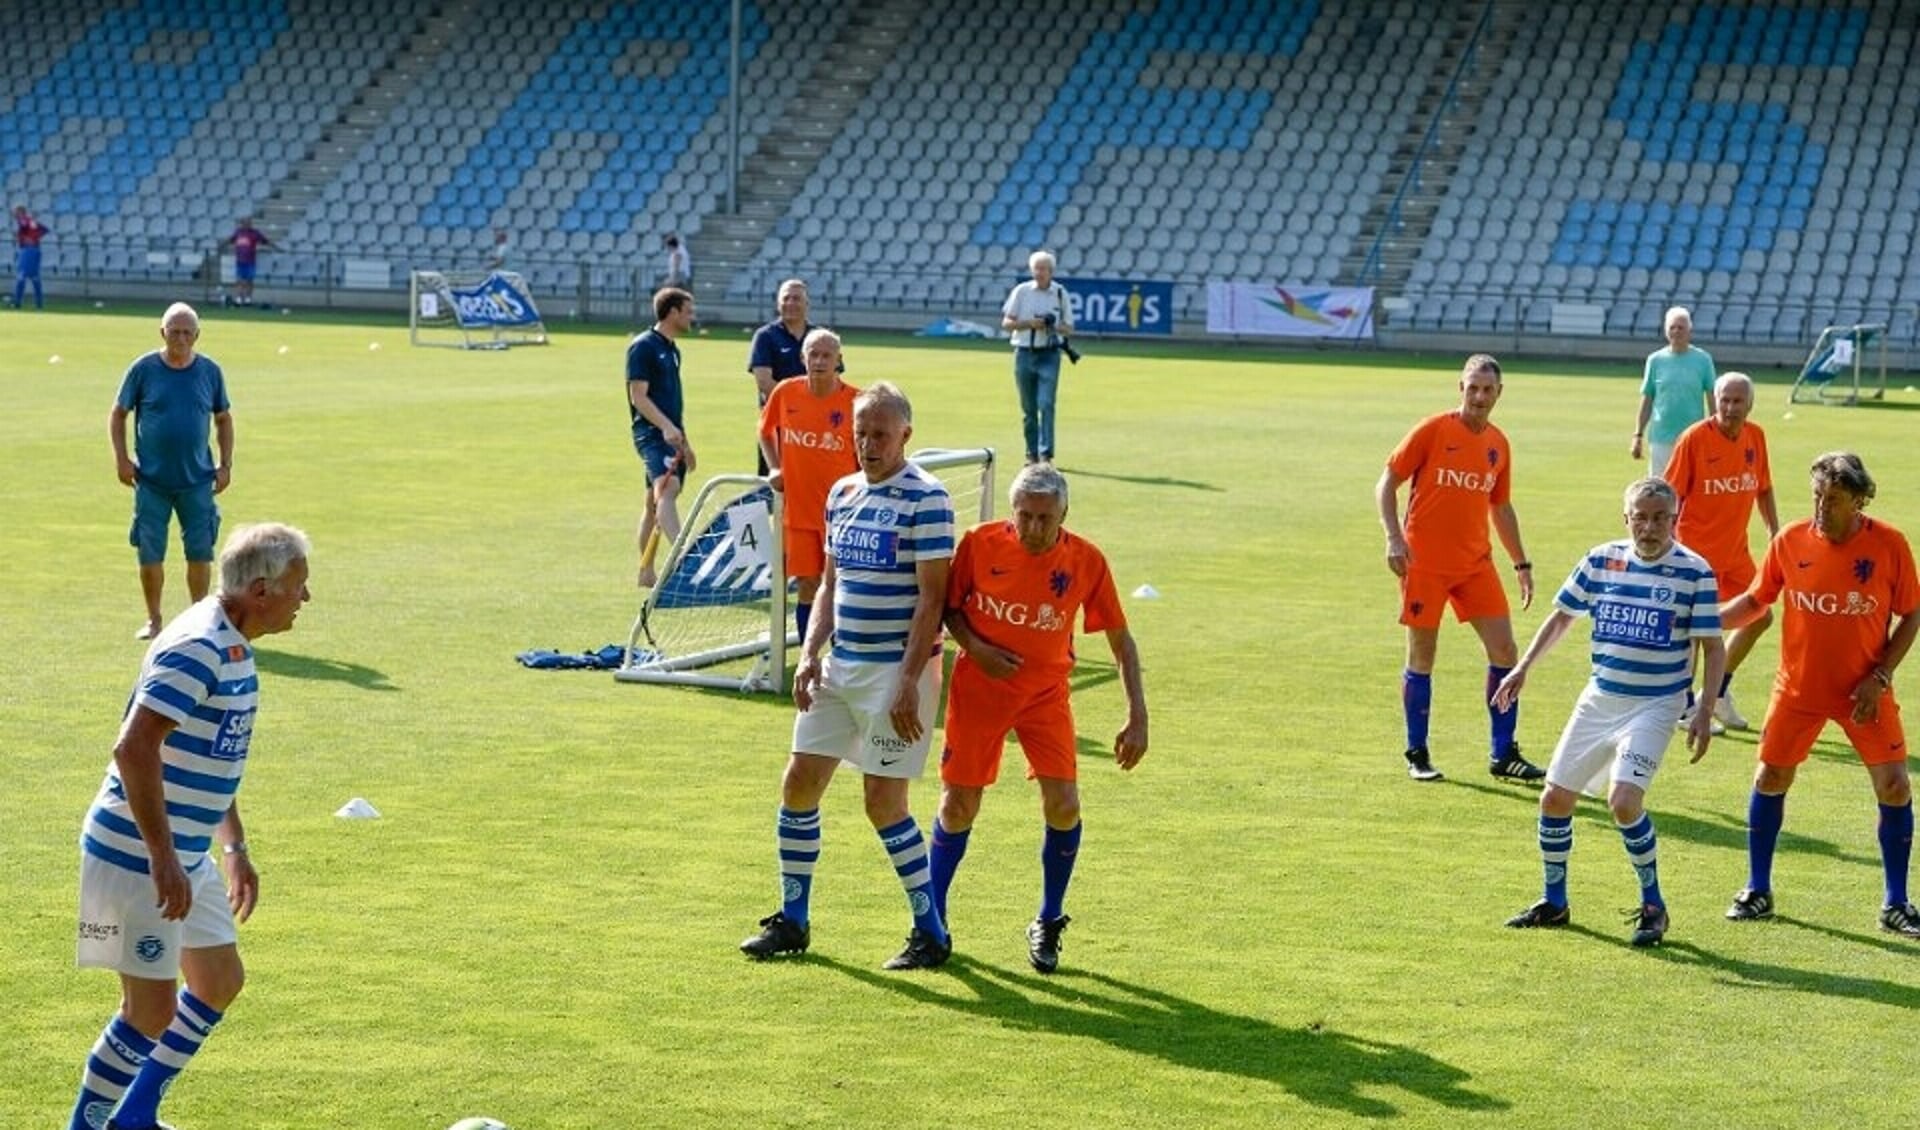 Walking Football vorig jaar bij De Graafschap tegen het Nederlands team met o.a Sjaak Swart, Dick Schoenaker, Ernie Brands en Bennie Wijnstekers. Foto: PR